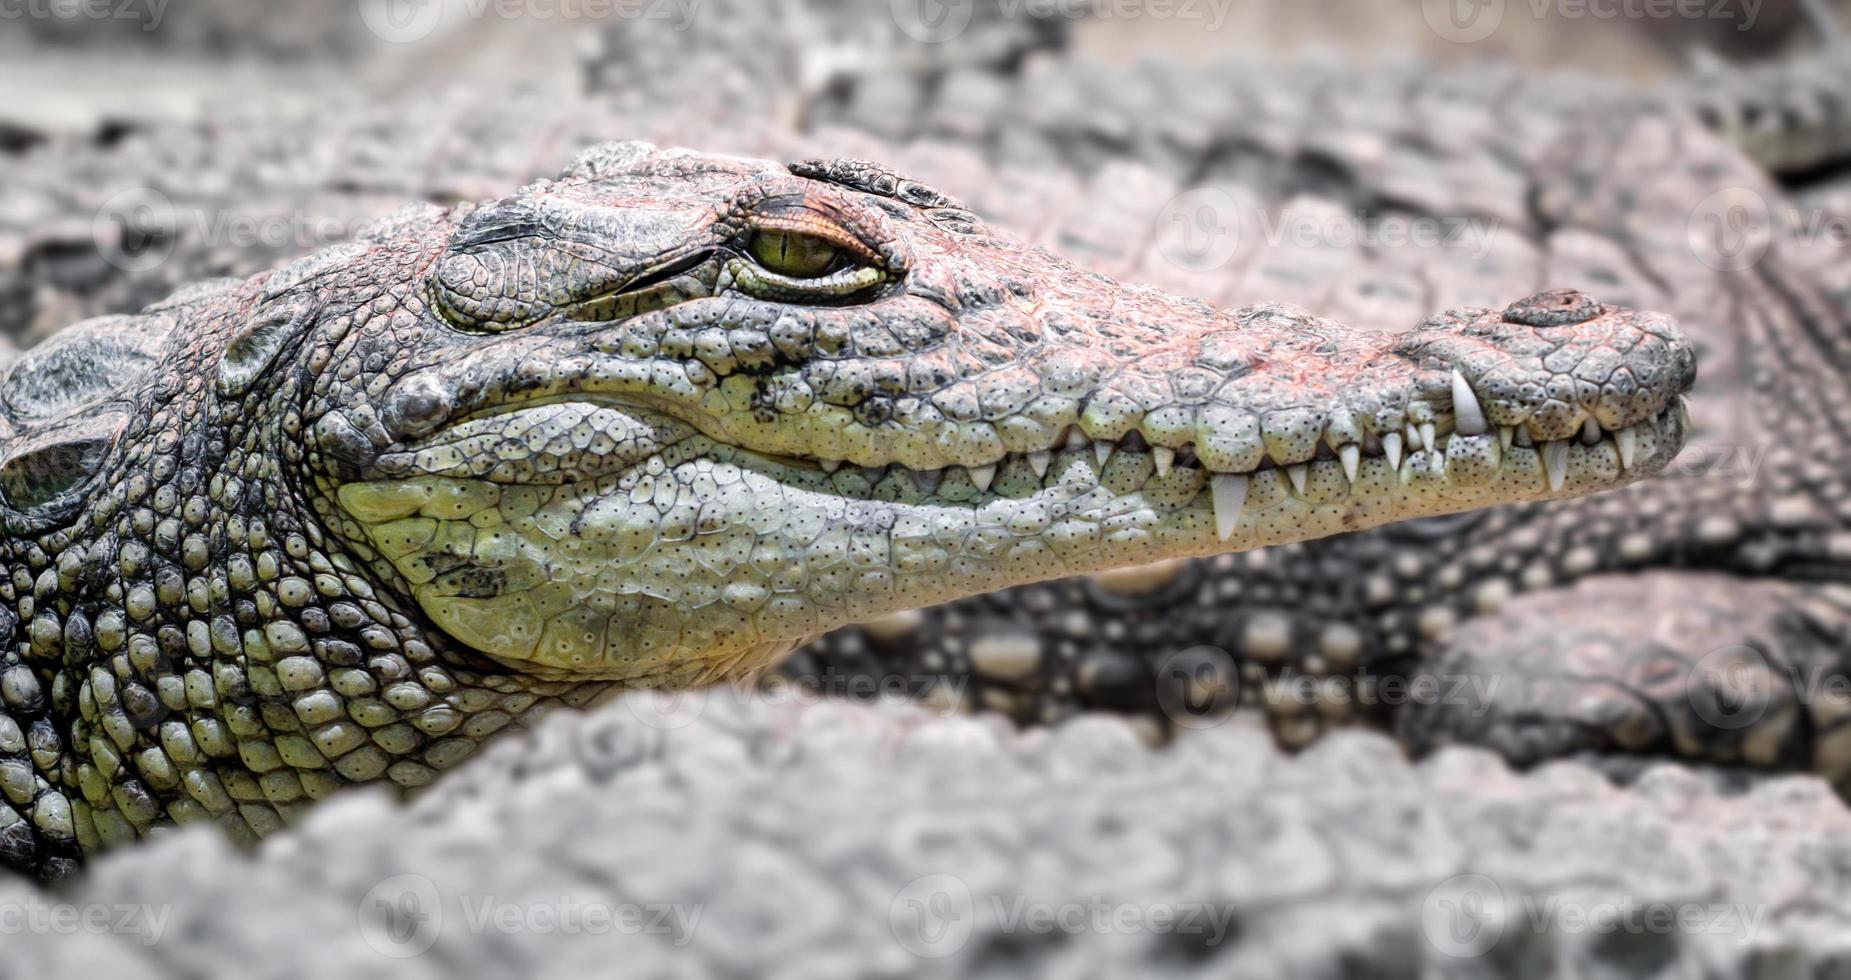 flera krokodiler i alligatorer, farliga köttätande reptiler på nära håll foto